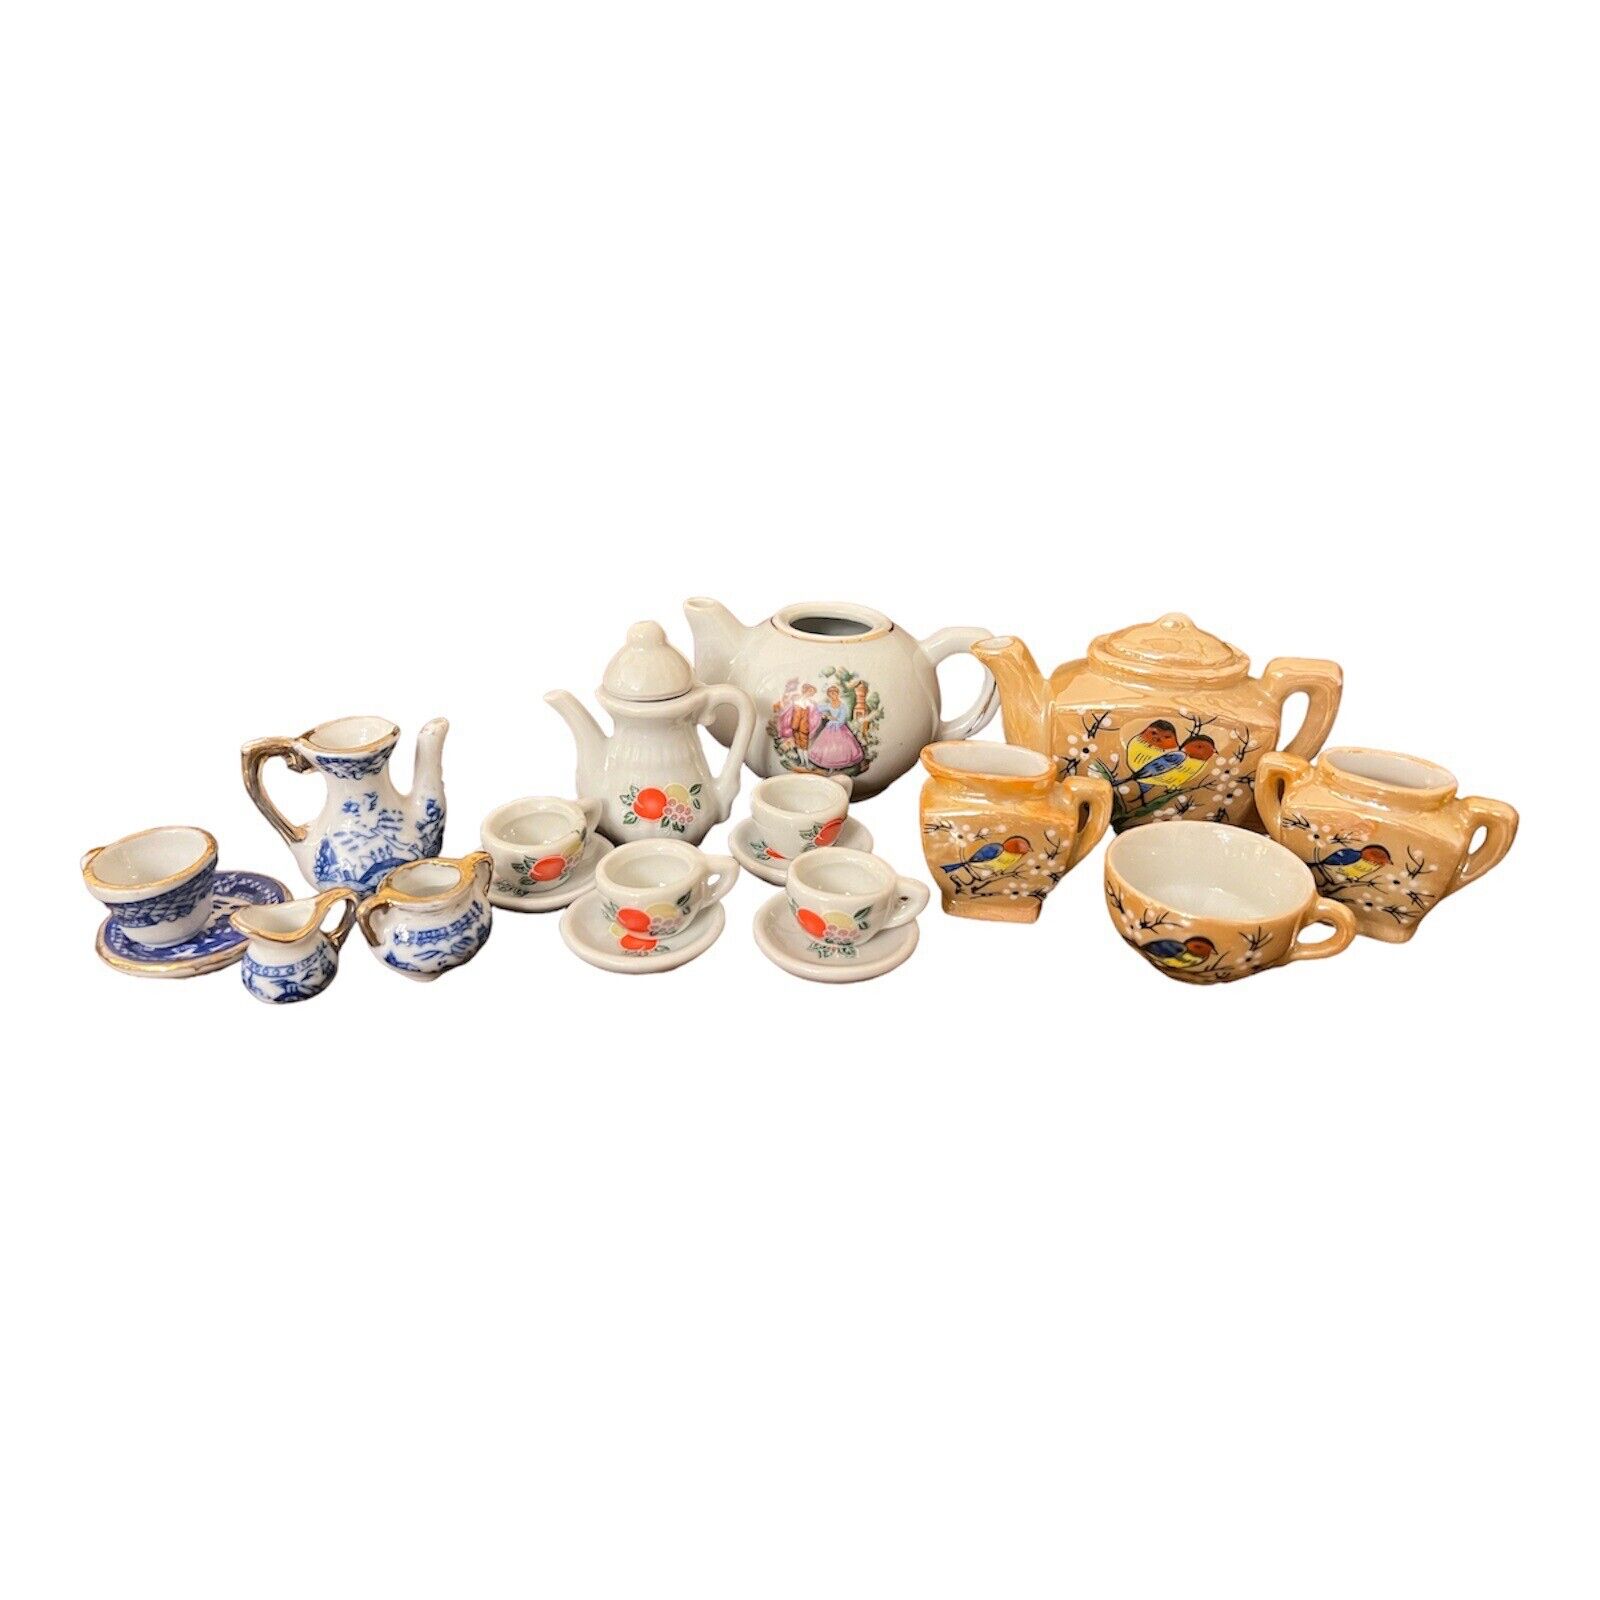 Lot Of 19 Pieces Vintage Miniature Mini Porcelain Floral Tea Sets Collectibles